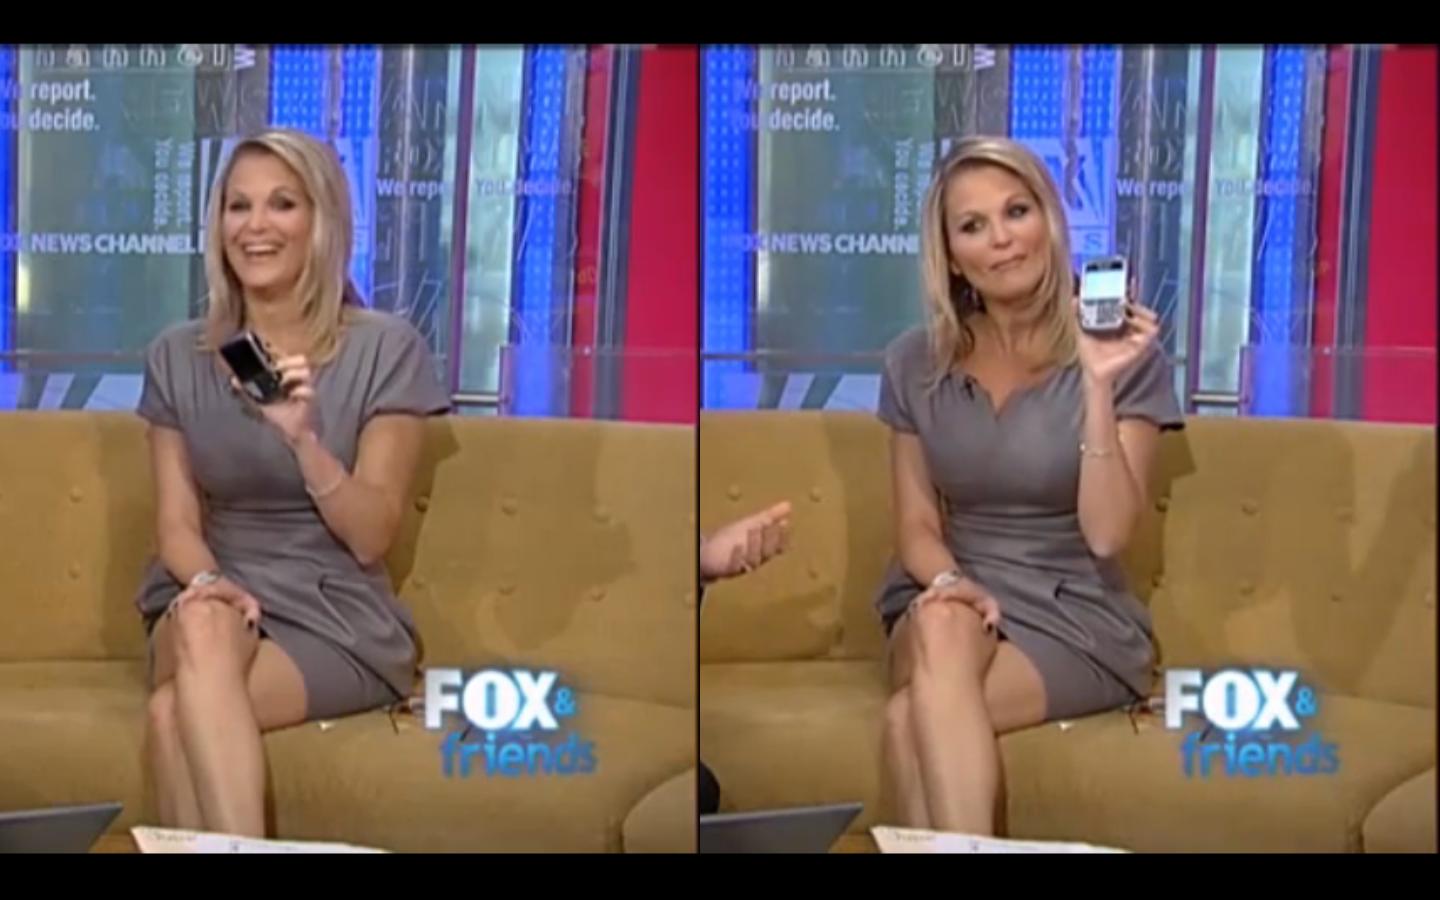 Fox newswomen upskirt photos